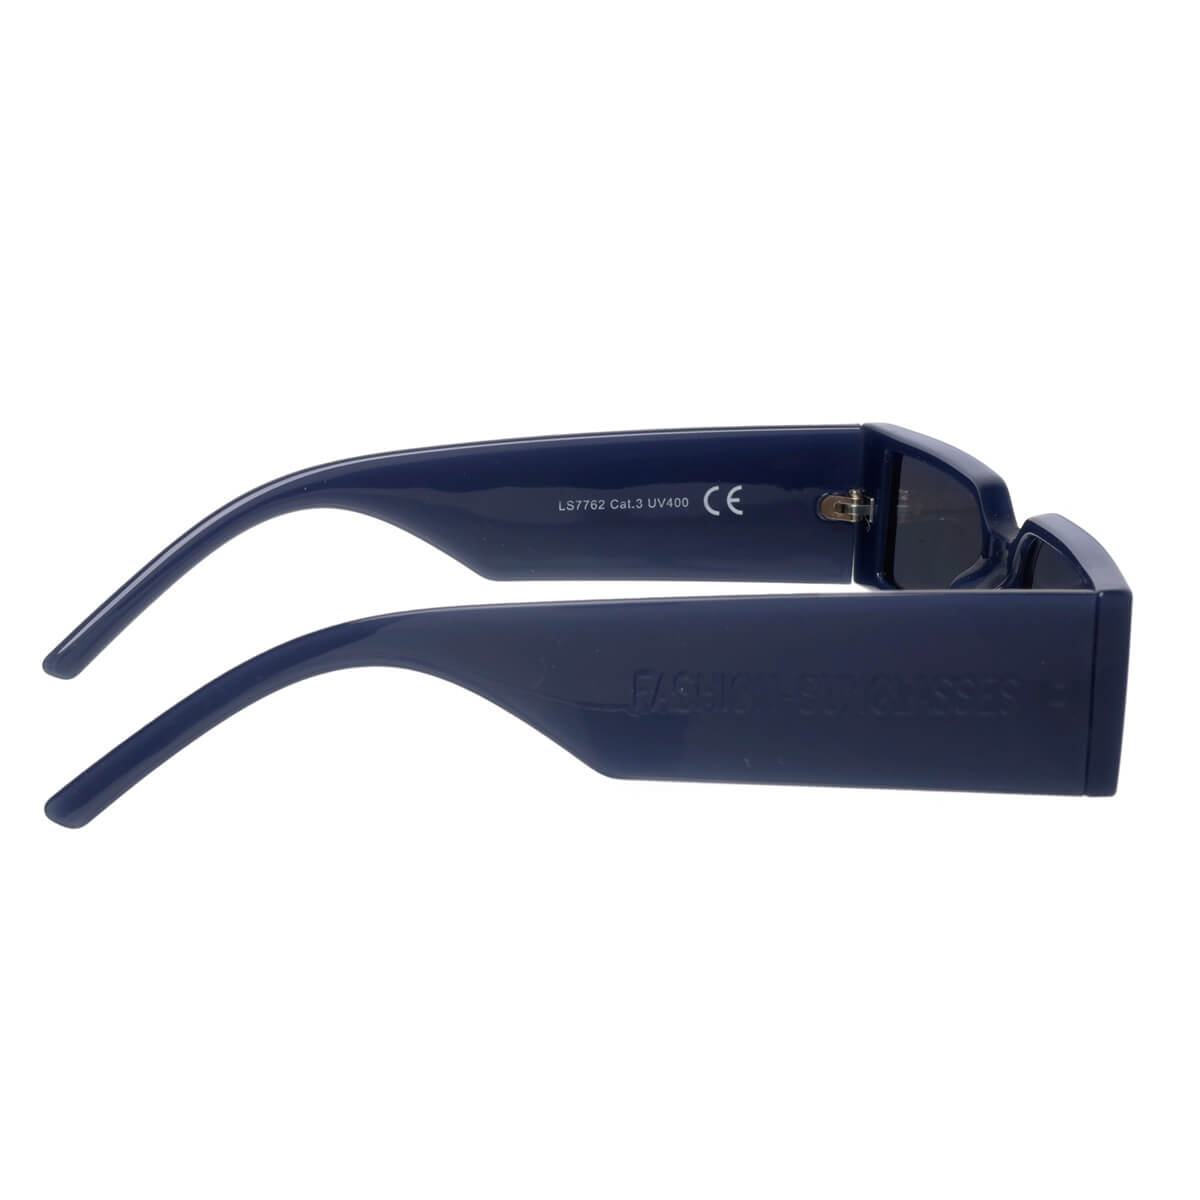 Futuristic rectangular sunglasses